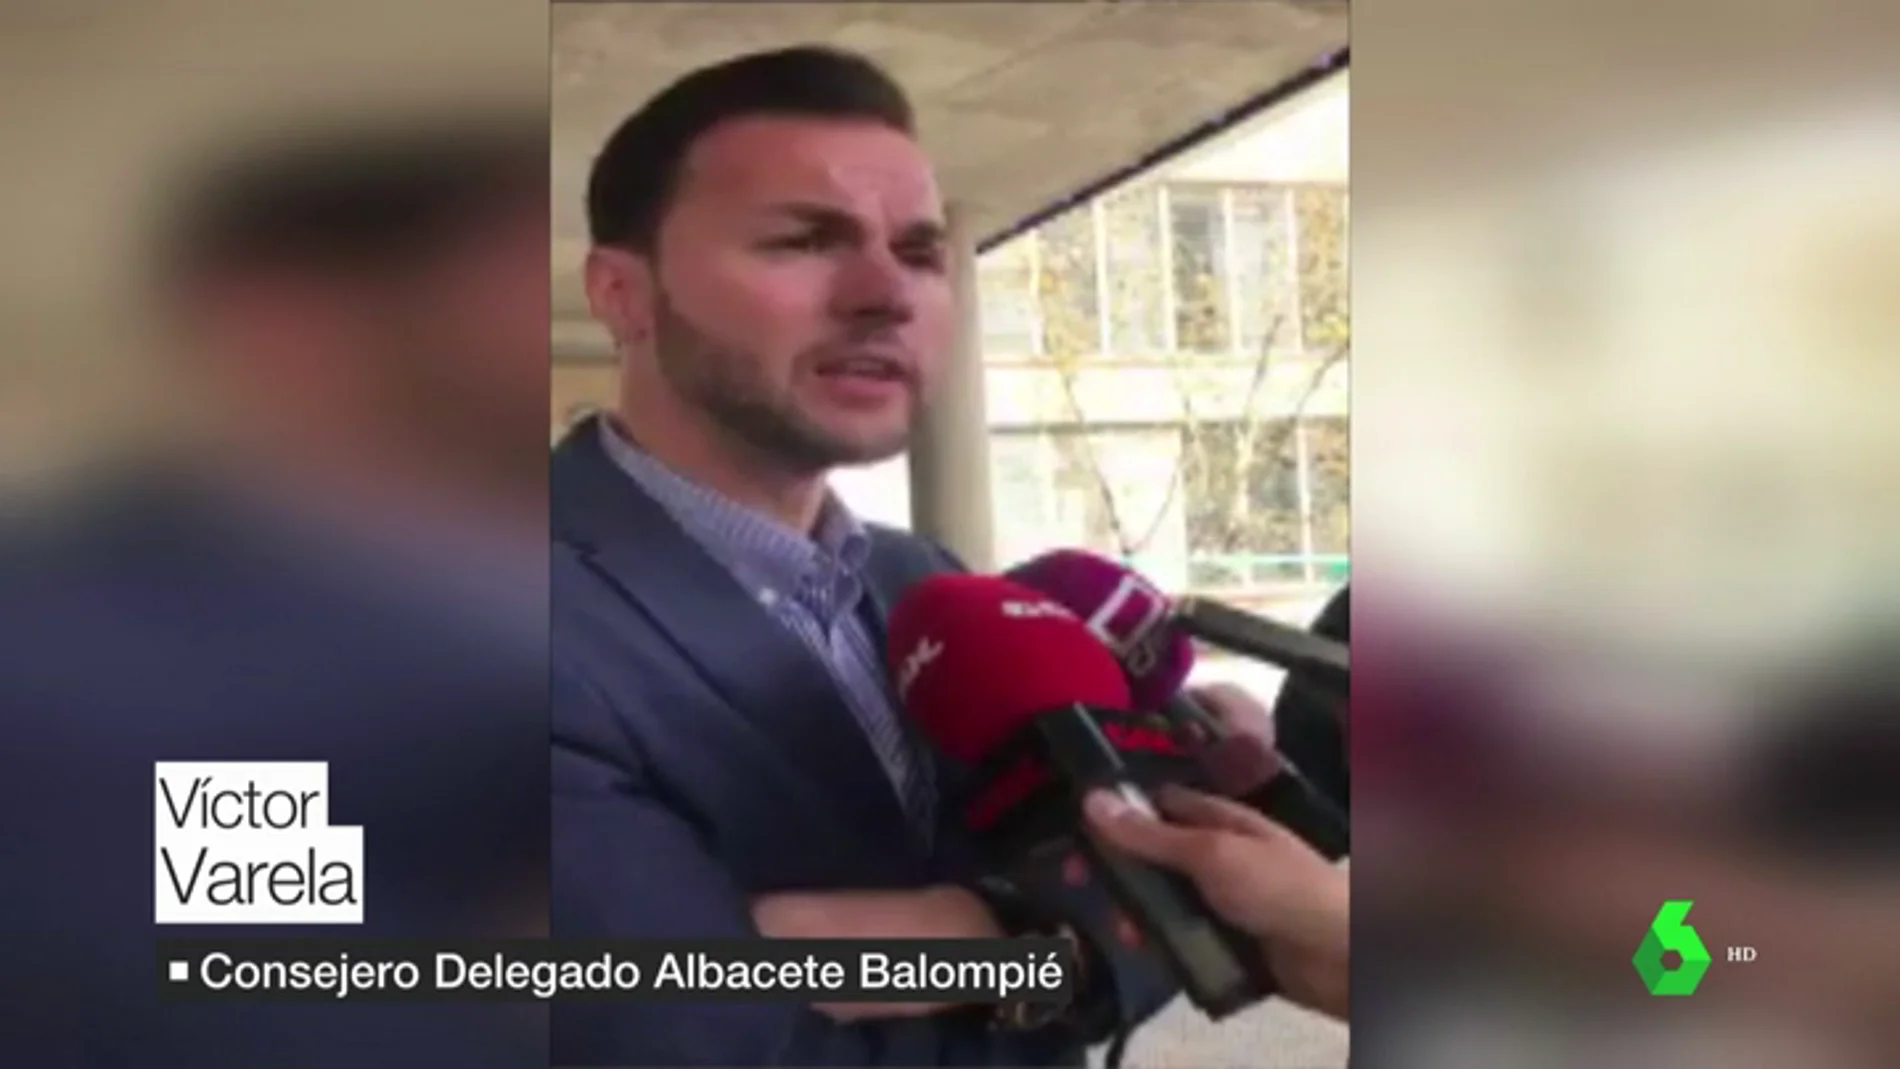 El consejero delegado del Albacete, sobre Pelayo Novo: "Hay que tener paciencia, son momentos duros"